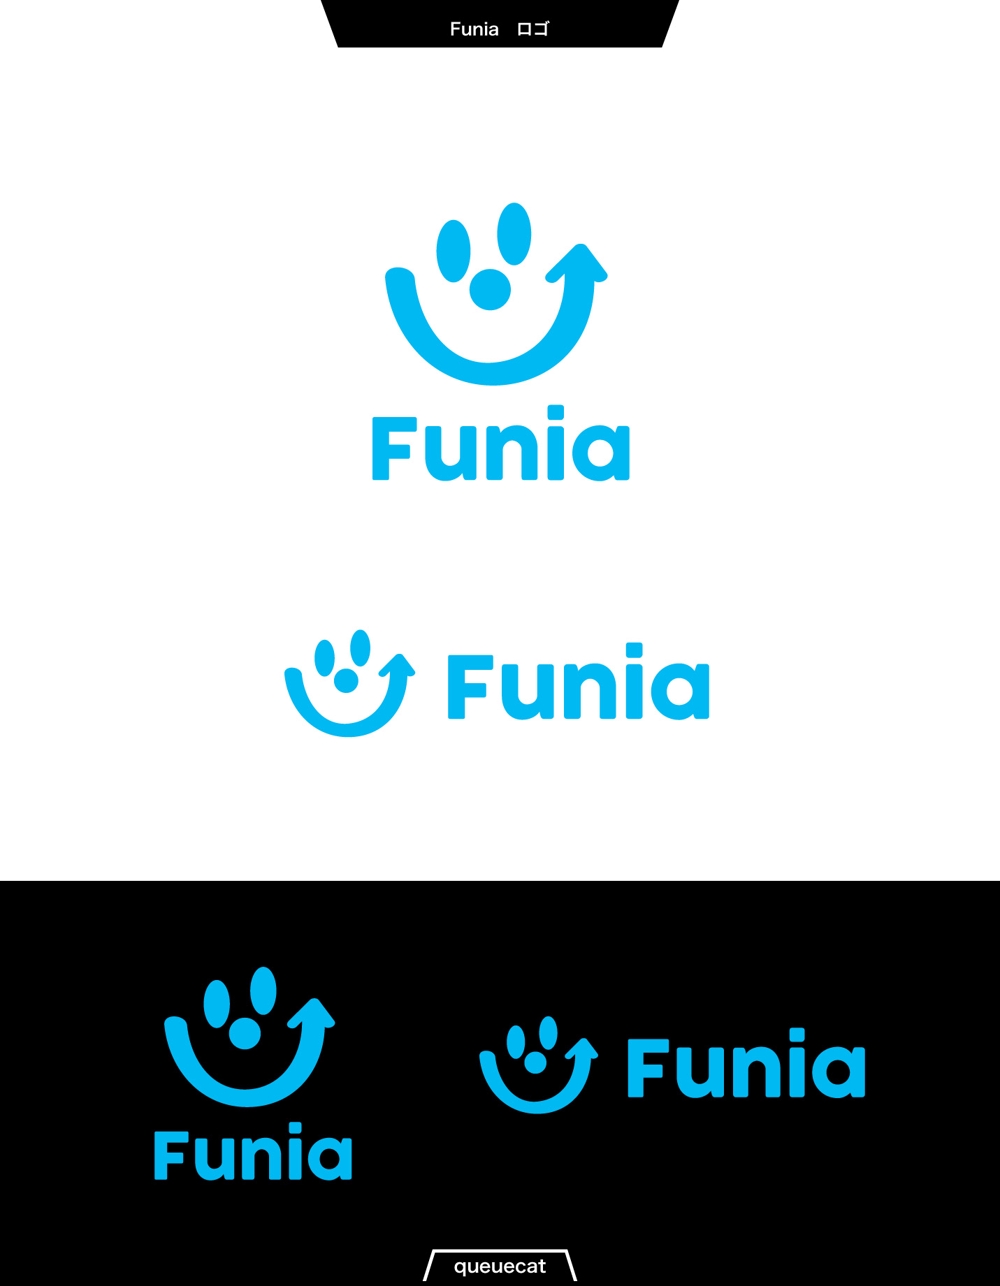 アマゾン大口メーカーの永久ブランド名「Funia」(商標登録中)のロゴデザインを応募します。